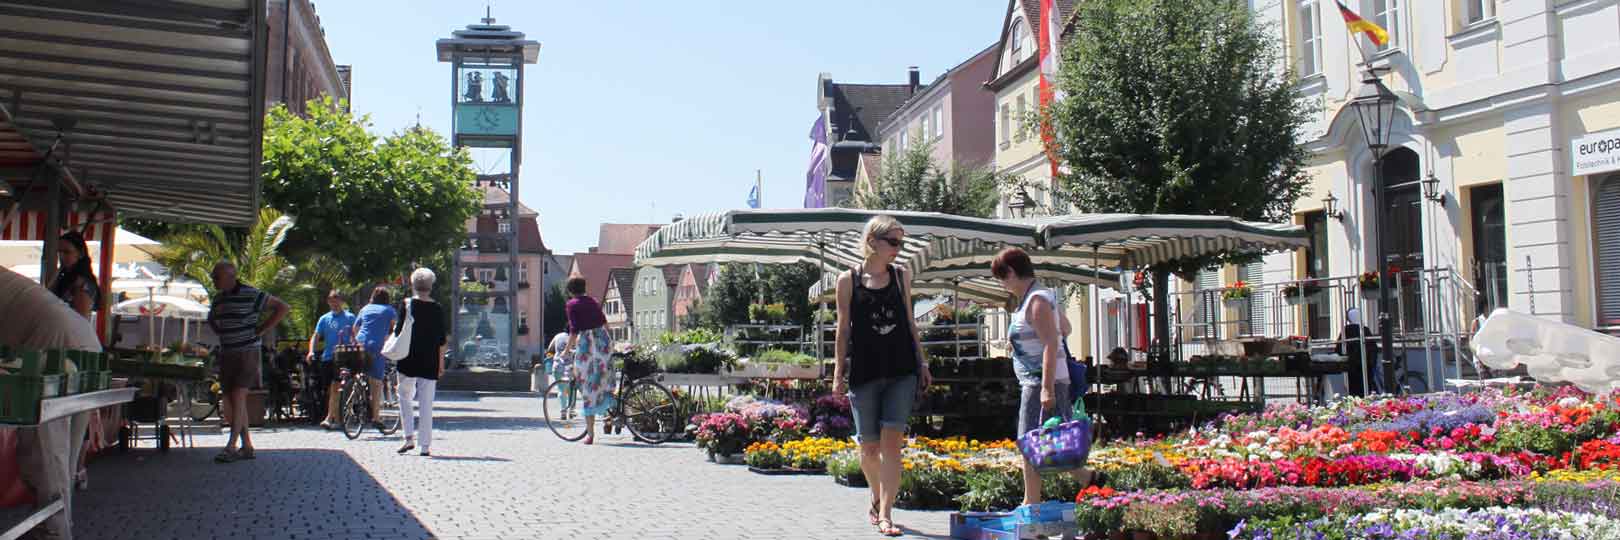 Hintergrundbild: Marktplatz